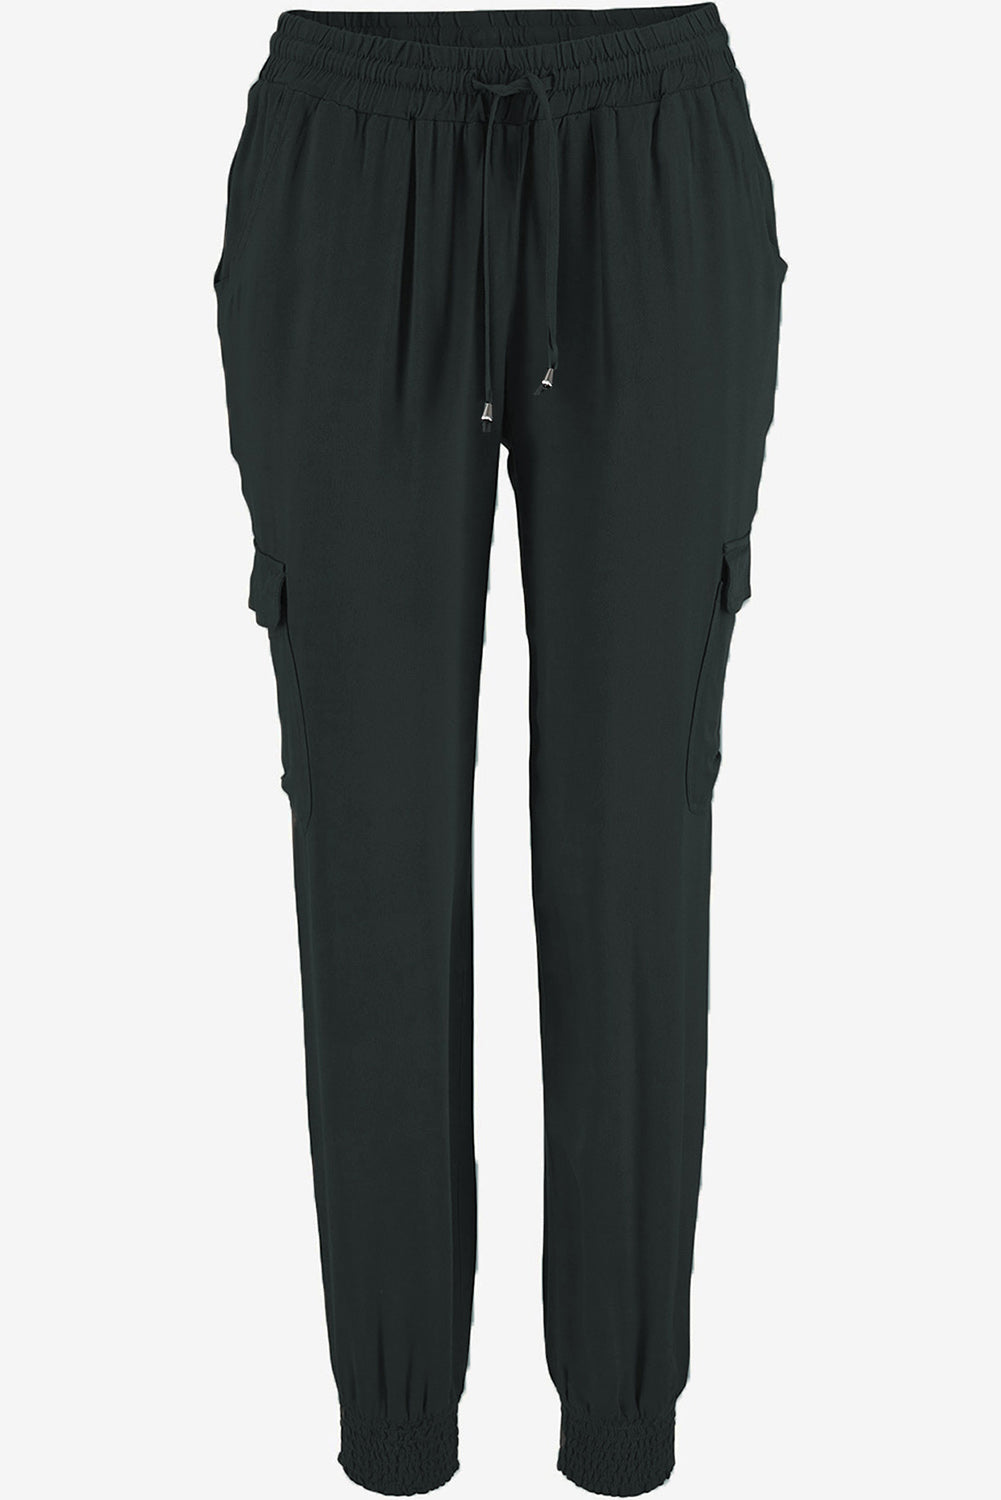 Pantalon de jogging taille haute gris avec poches latérales et cordon de serrage